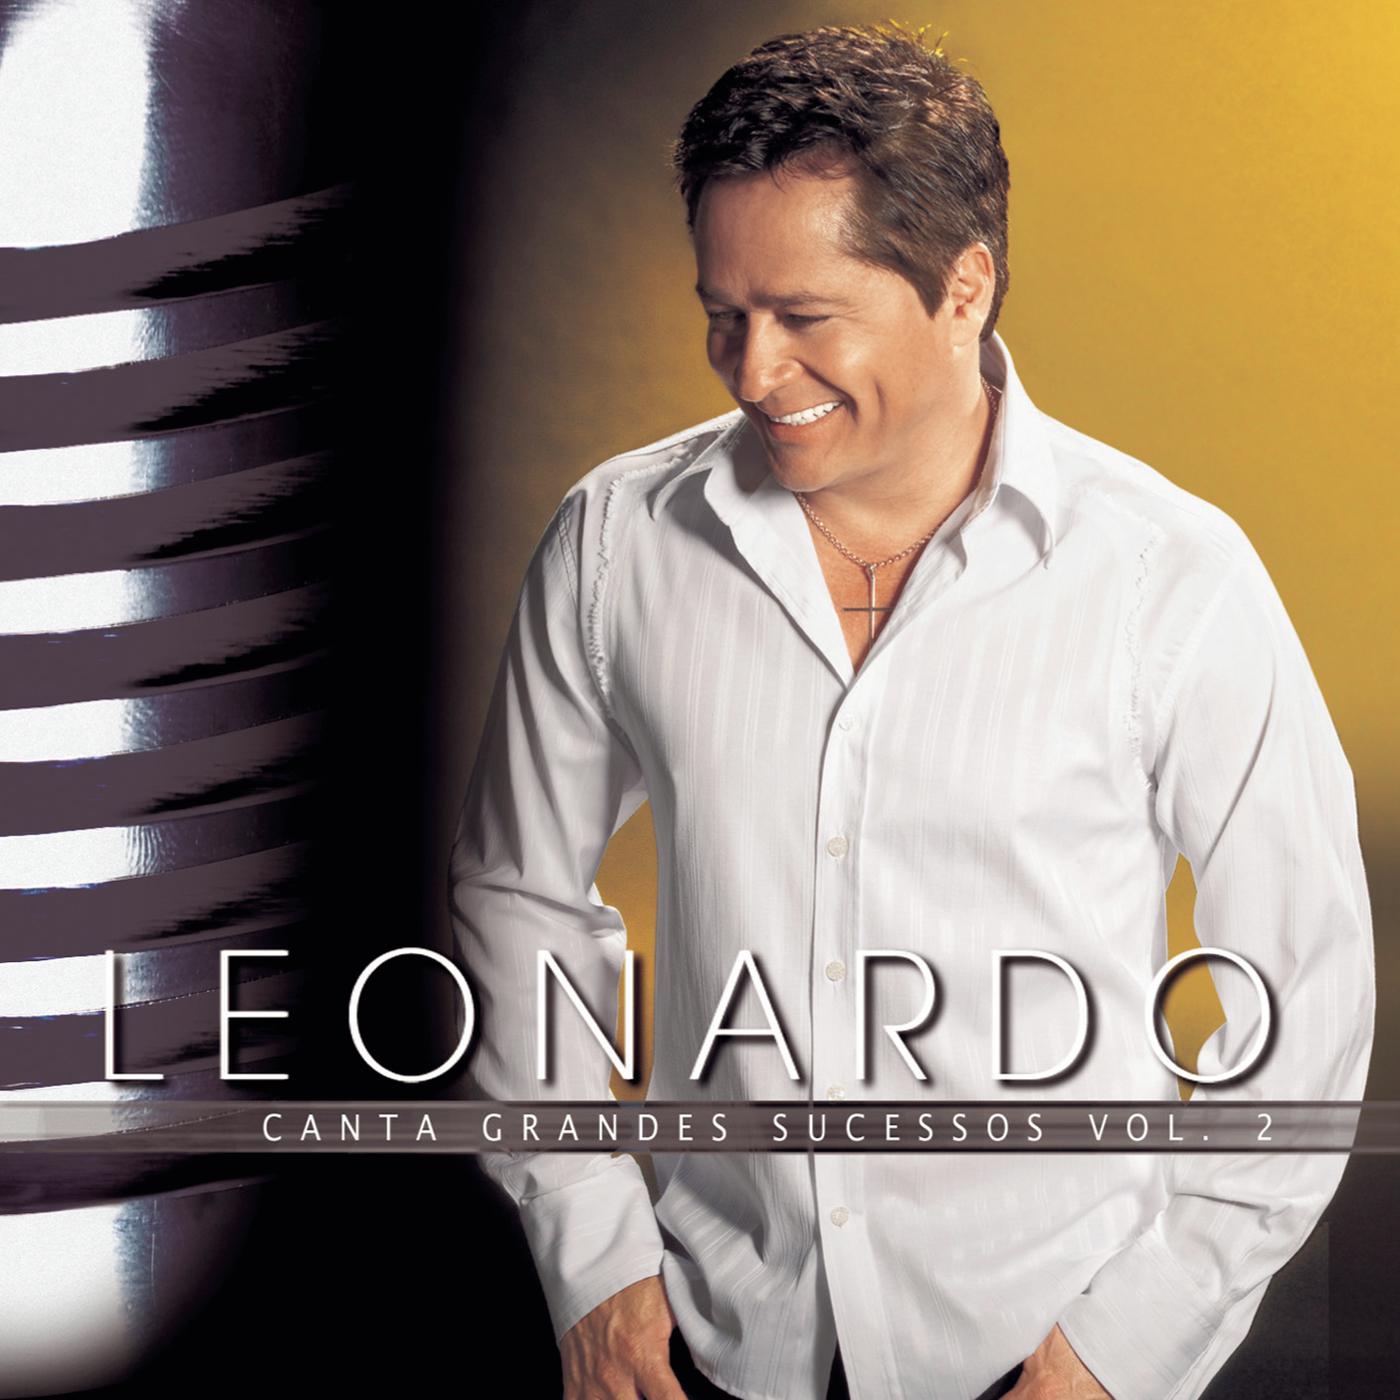 Leonardo Canta Grandes Sucessos - Volume 2